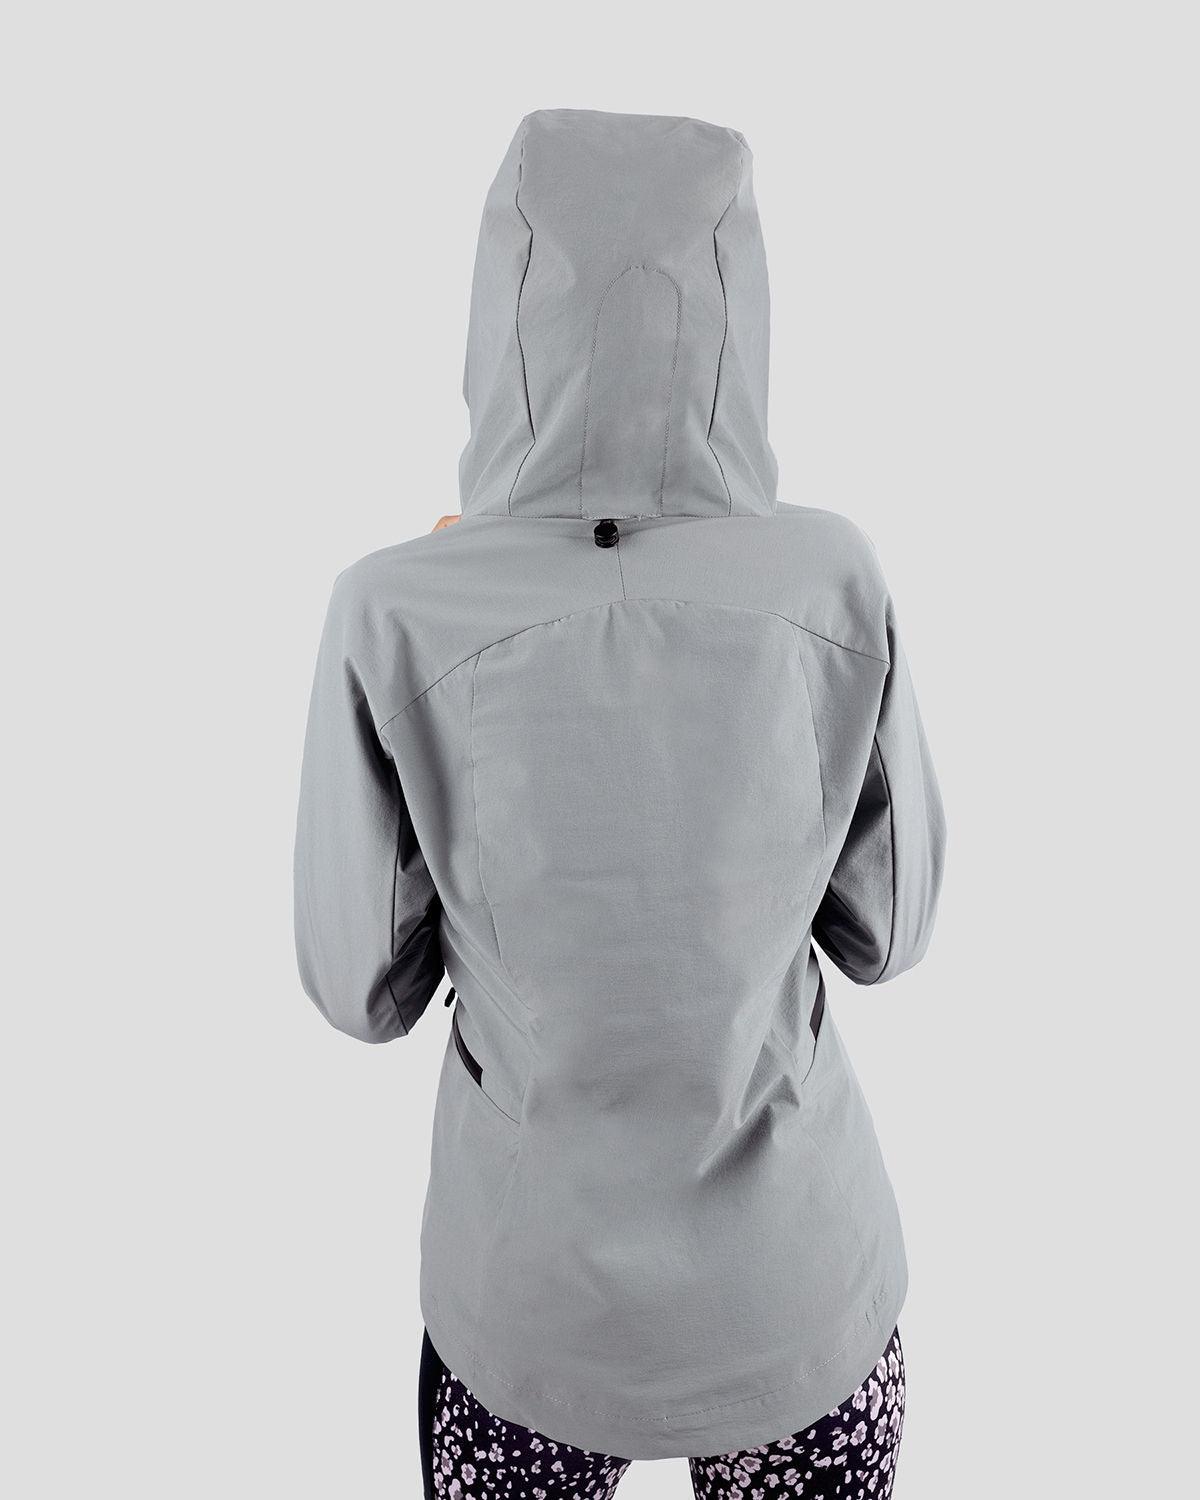 Photo by ð—”ð—§ð—¨ð— SPORTSWEAR Â® on December 20, 2022. May be an image of 1 woman wear gray jacket with printed atum emblem.